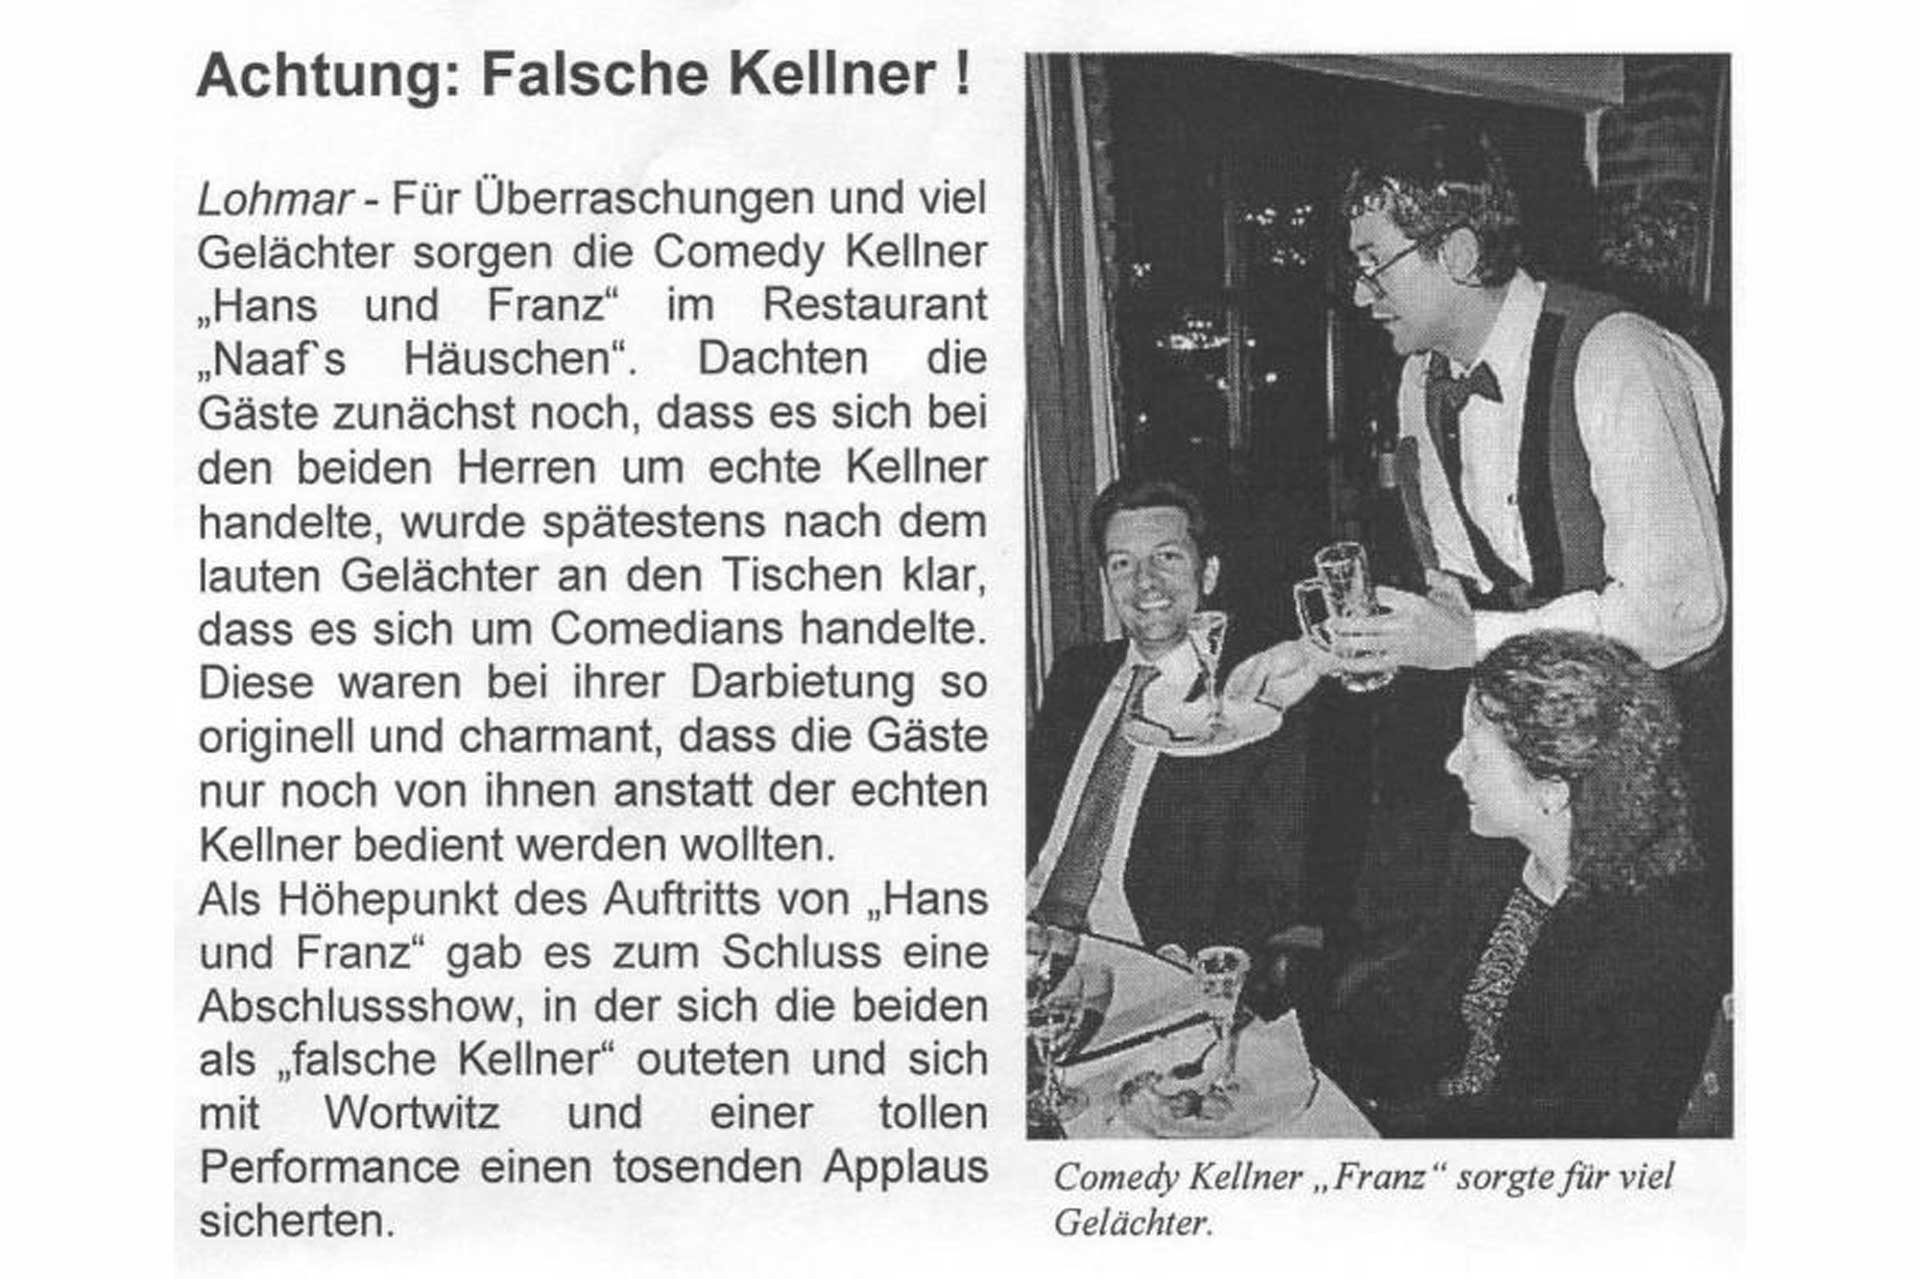 Hans & Franz - Die Comedy Kellner